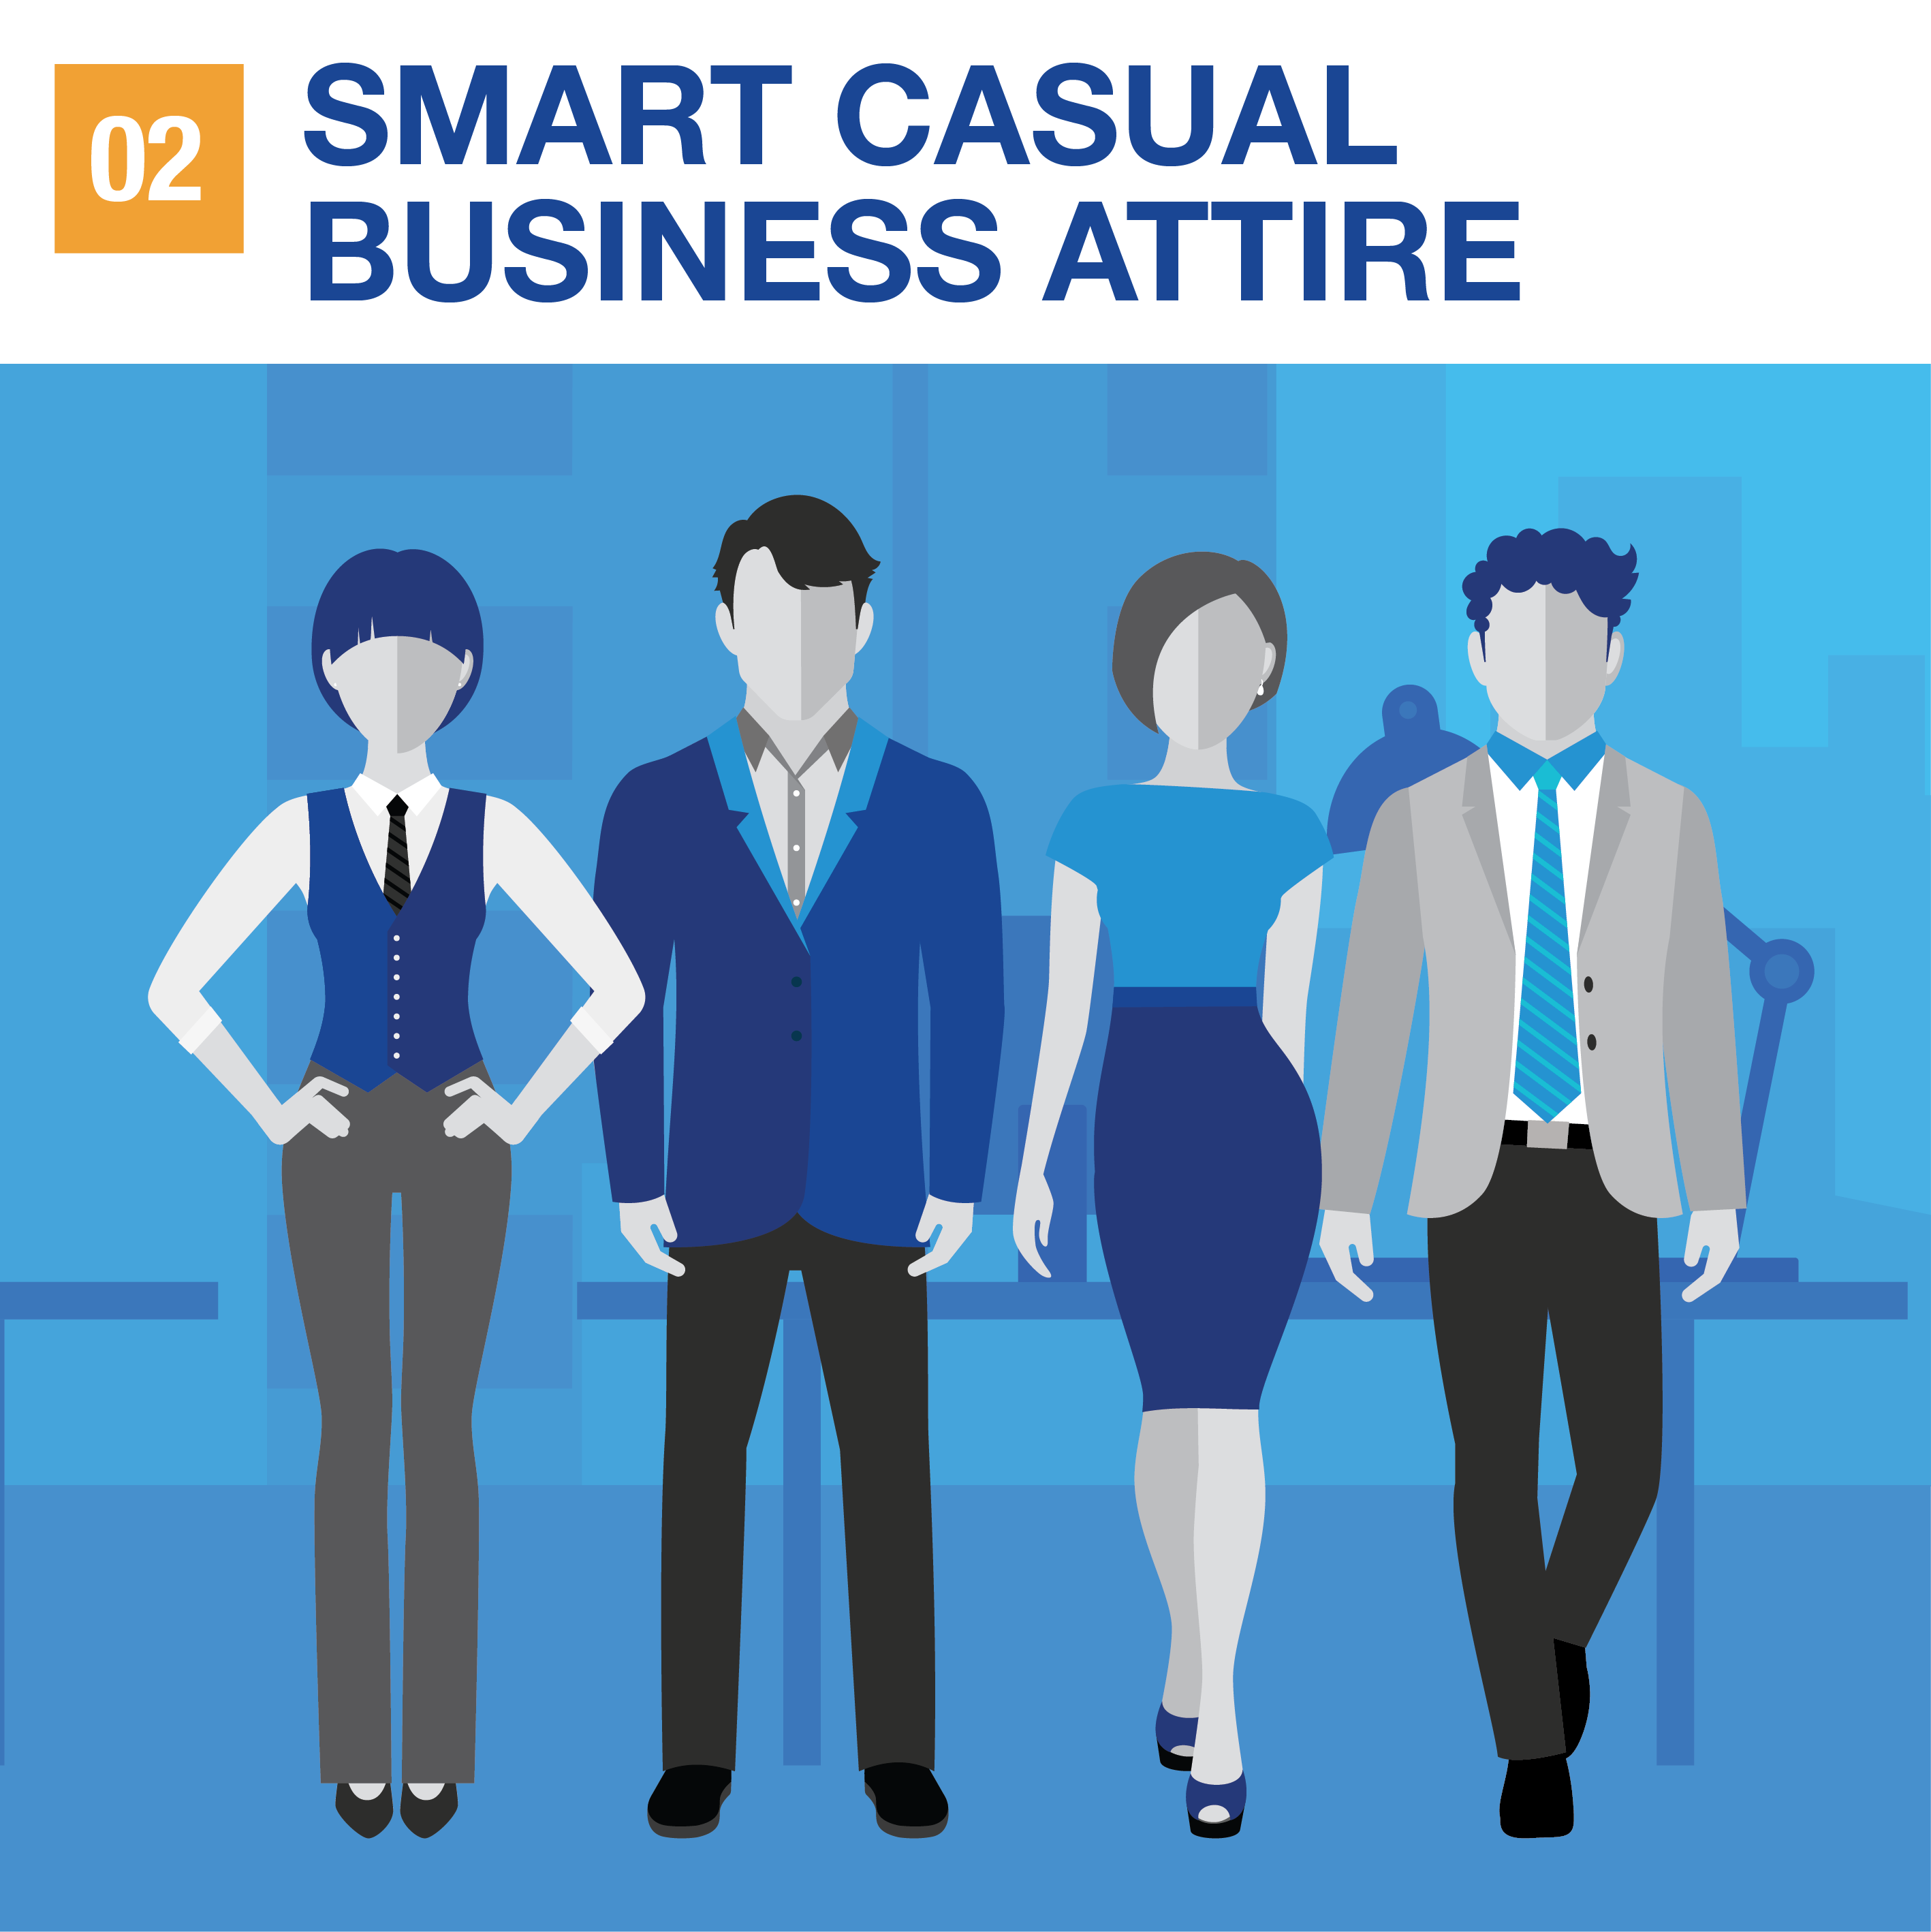 Smart casual business attire